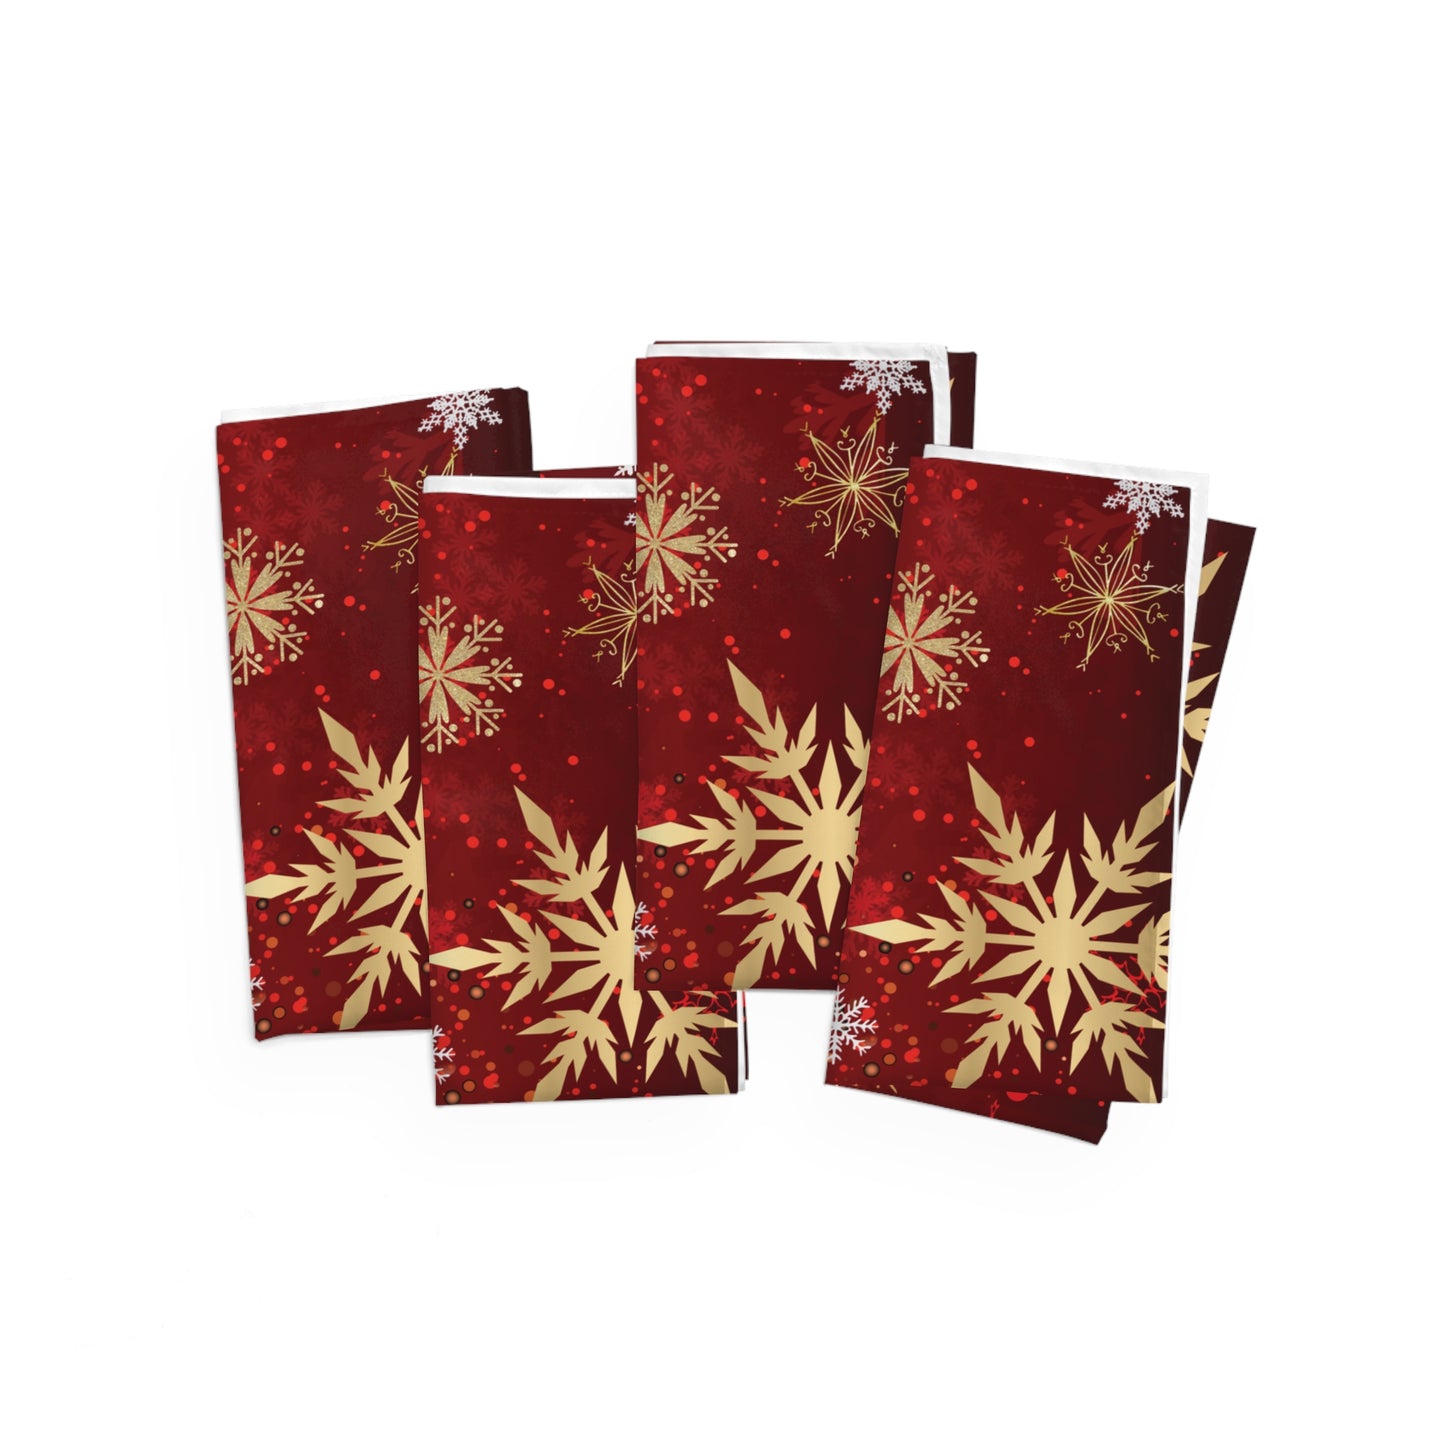 Red and Gold Snowflake Christmas Napkins / Set of 4 Cloth Napkins